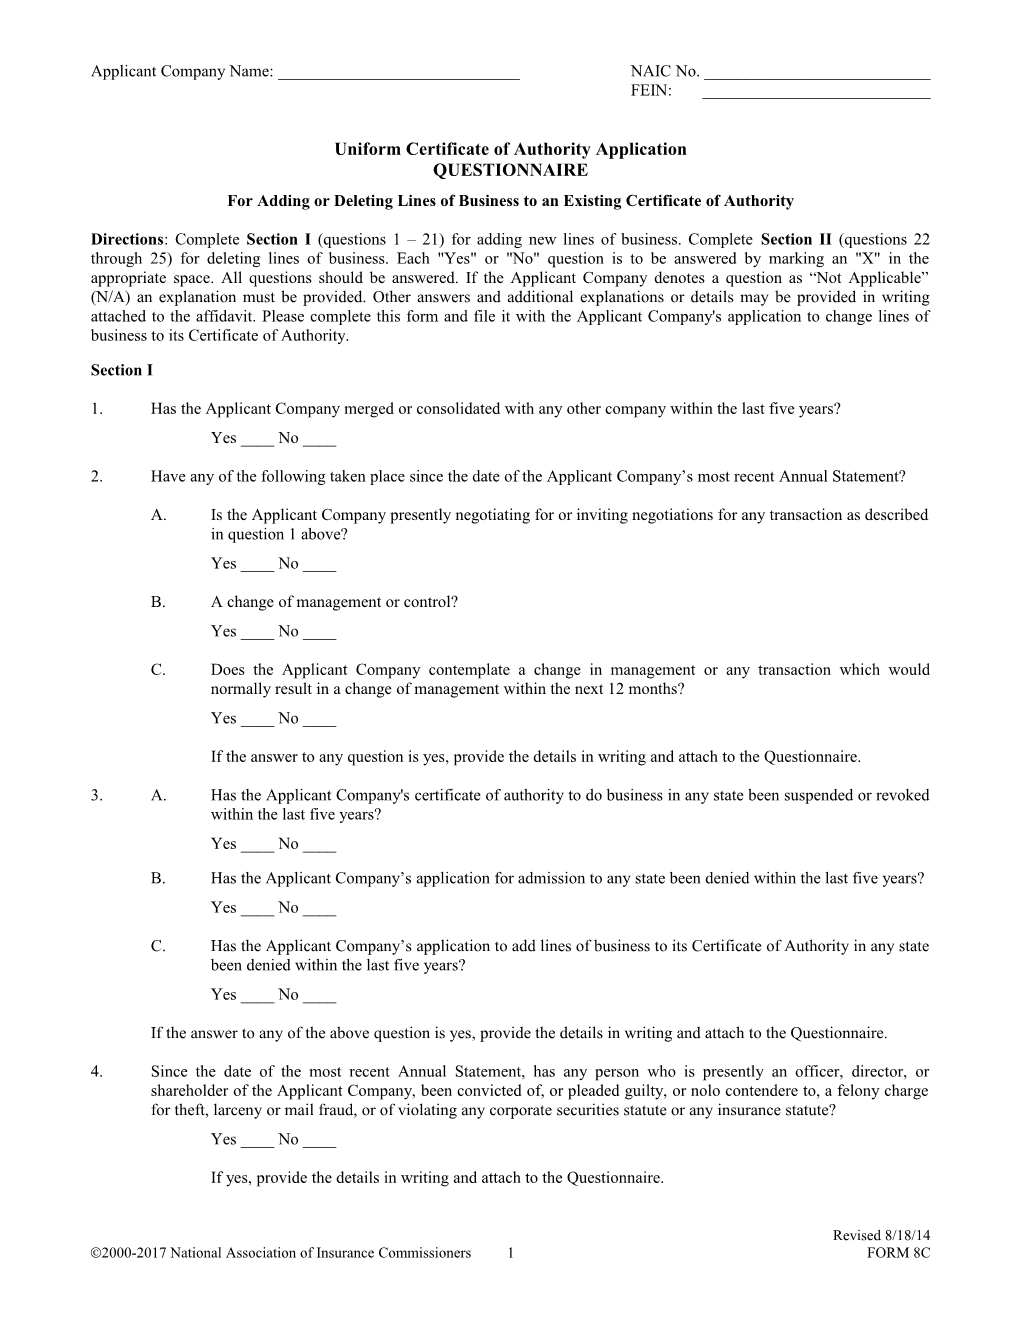 UCAA Corporate Amendments Application Form 8